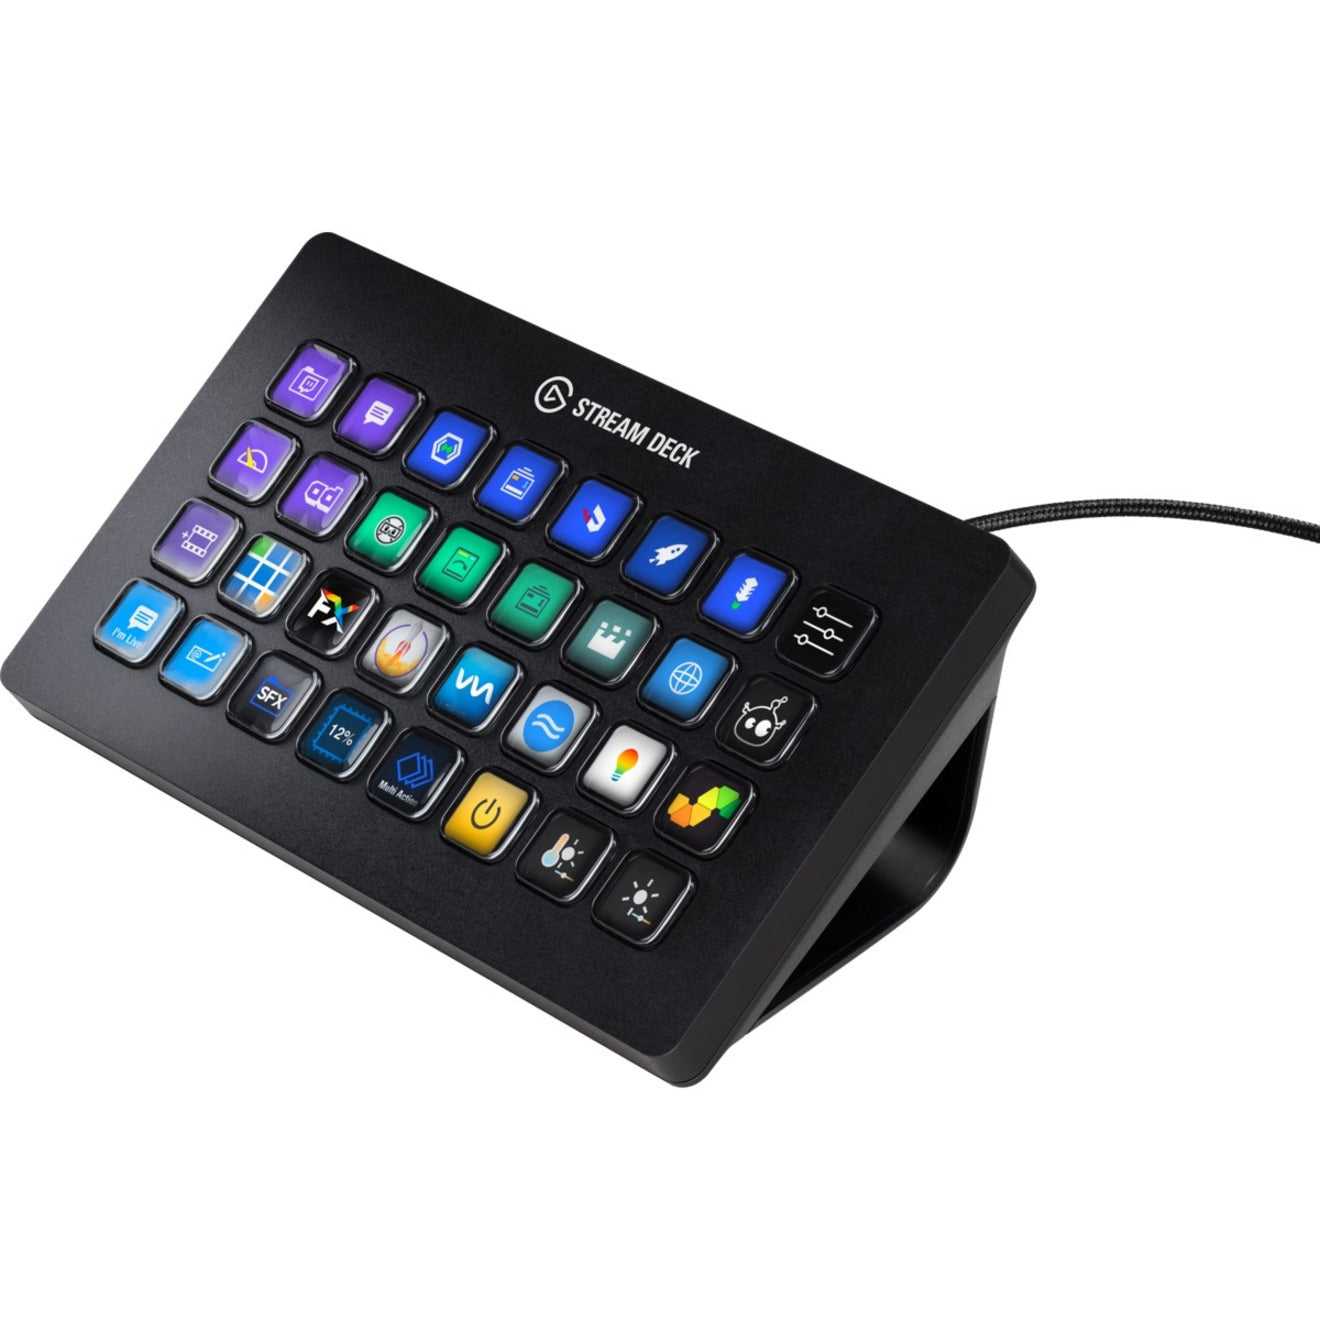 Corsair 10GAT9901 Stream Deck XL Keypad, 32 Keys, USB 3.0, 2 Year Warranty